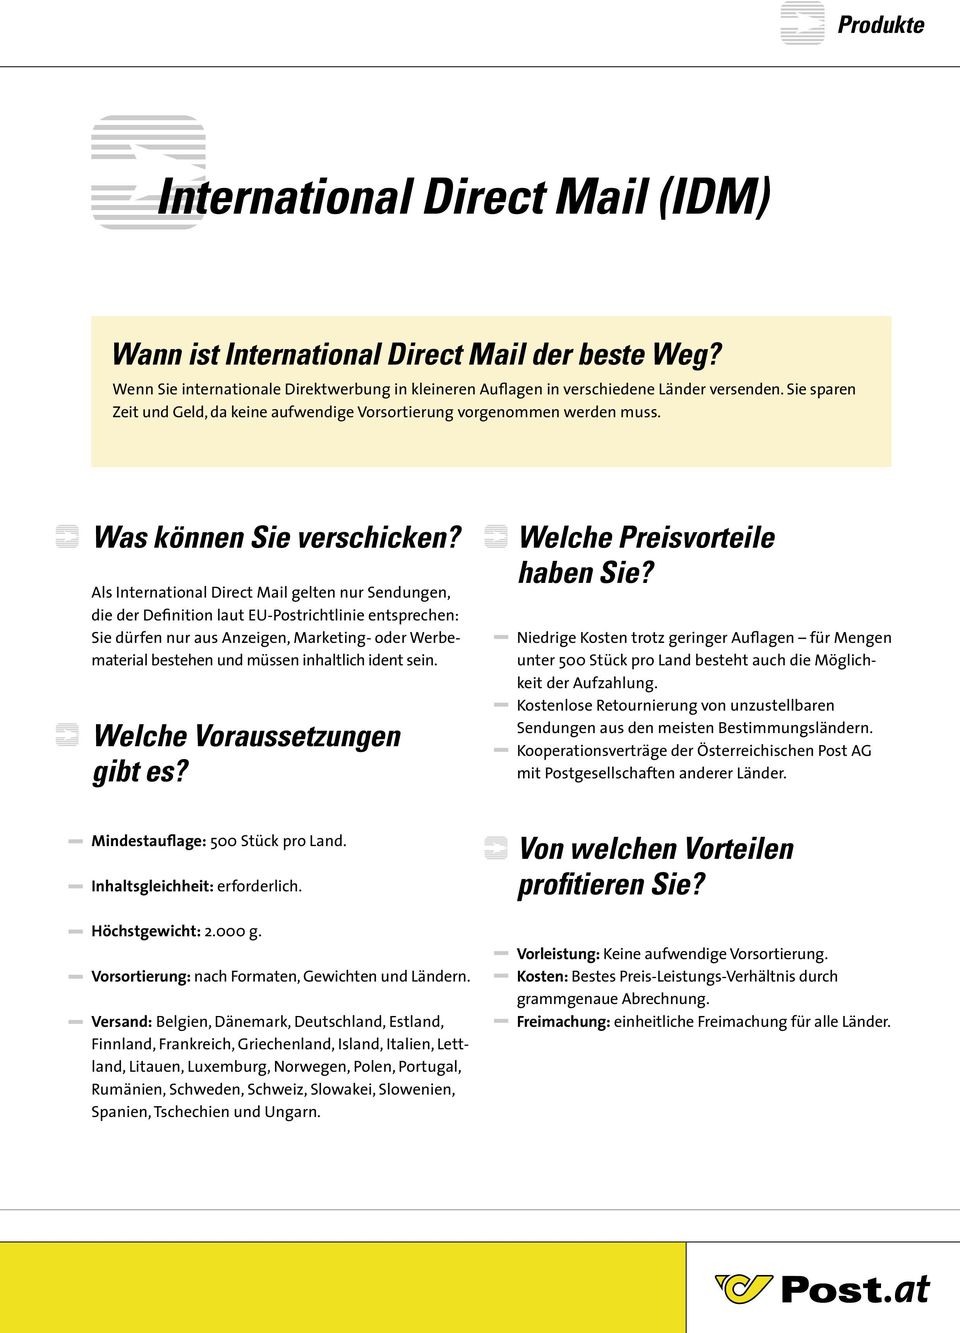 Als International Direct Mail gelten nur Sendungen, die der Definition laut EU-Postrichtlinie entsprechen: Sie dürfen nur aus Anzeigen, Marketing- oder Werbematerial bestehen und müssen inhaltlich